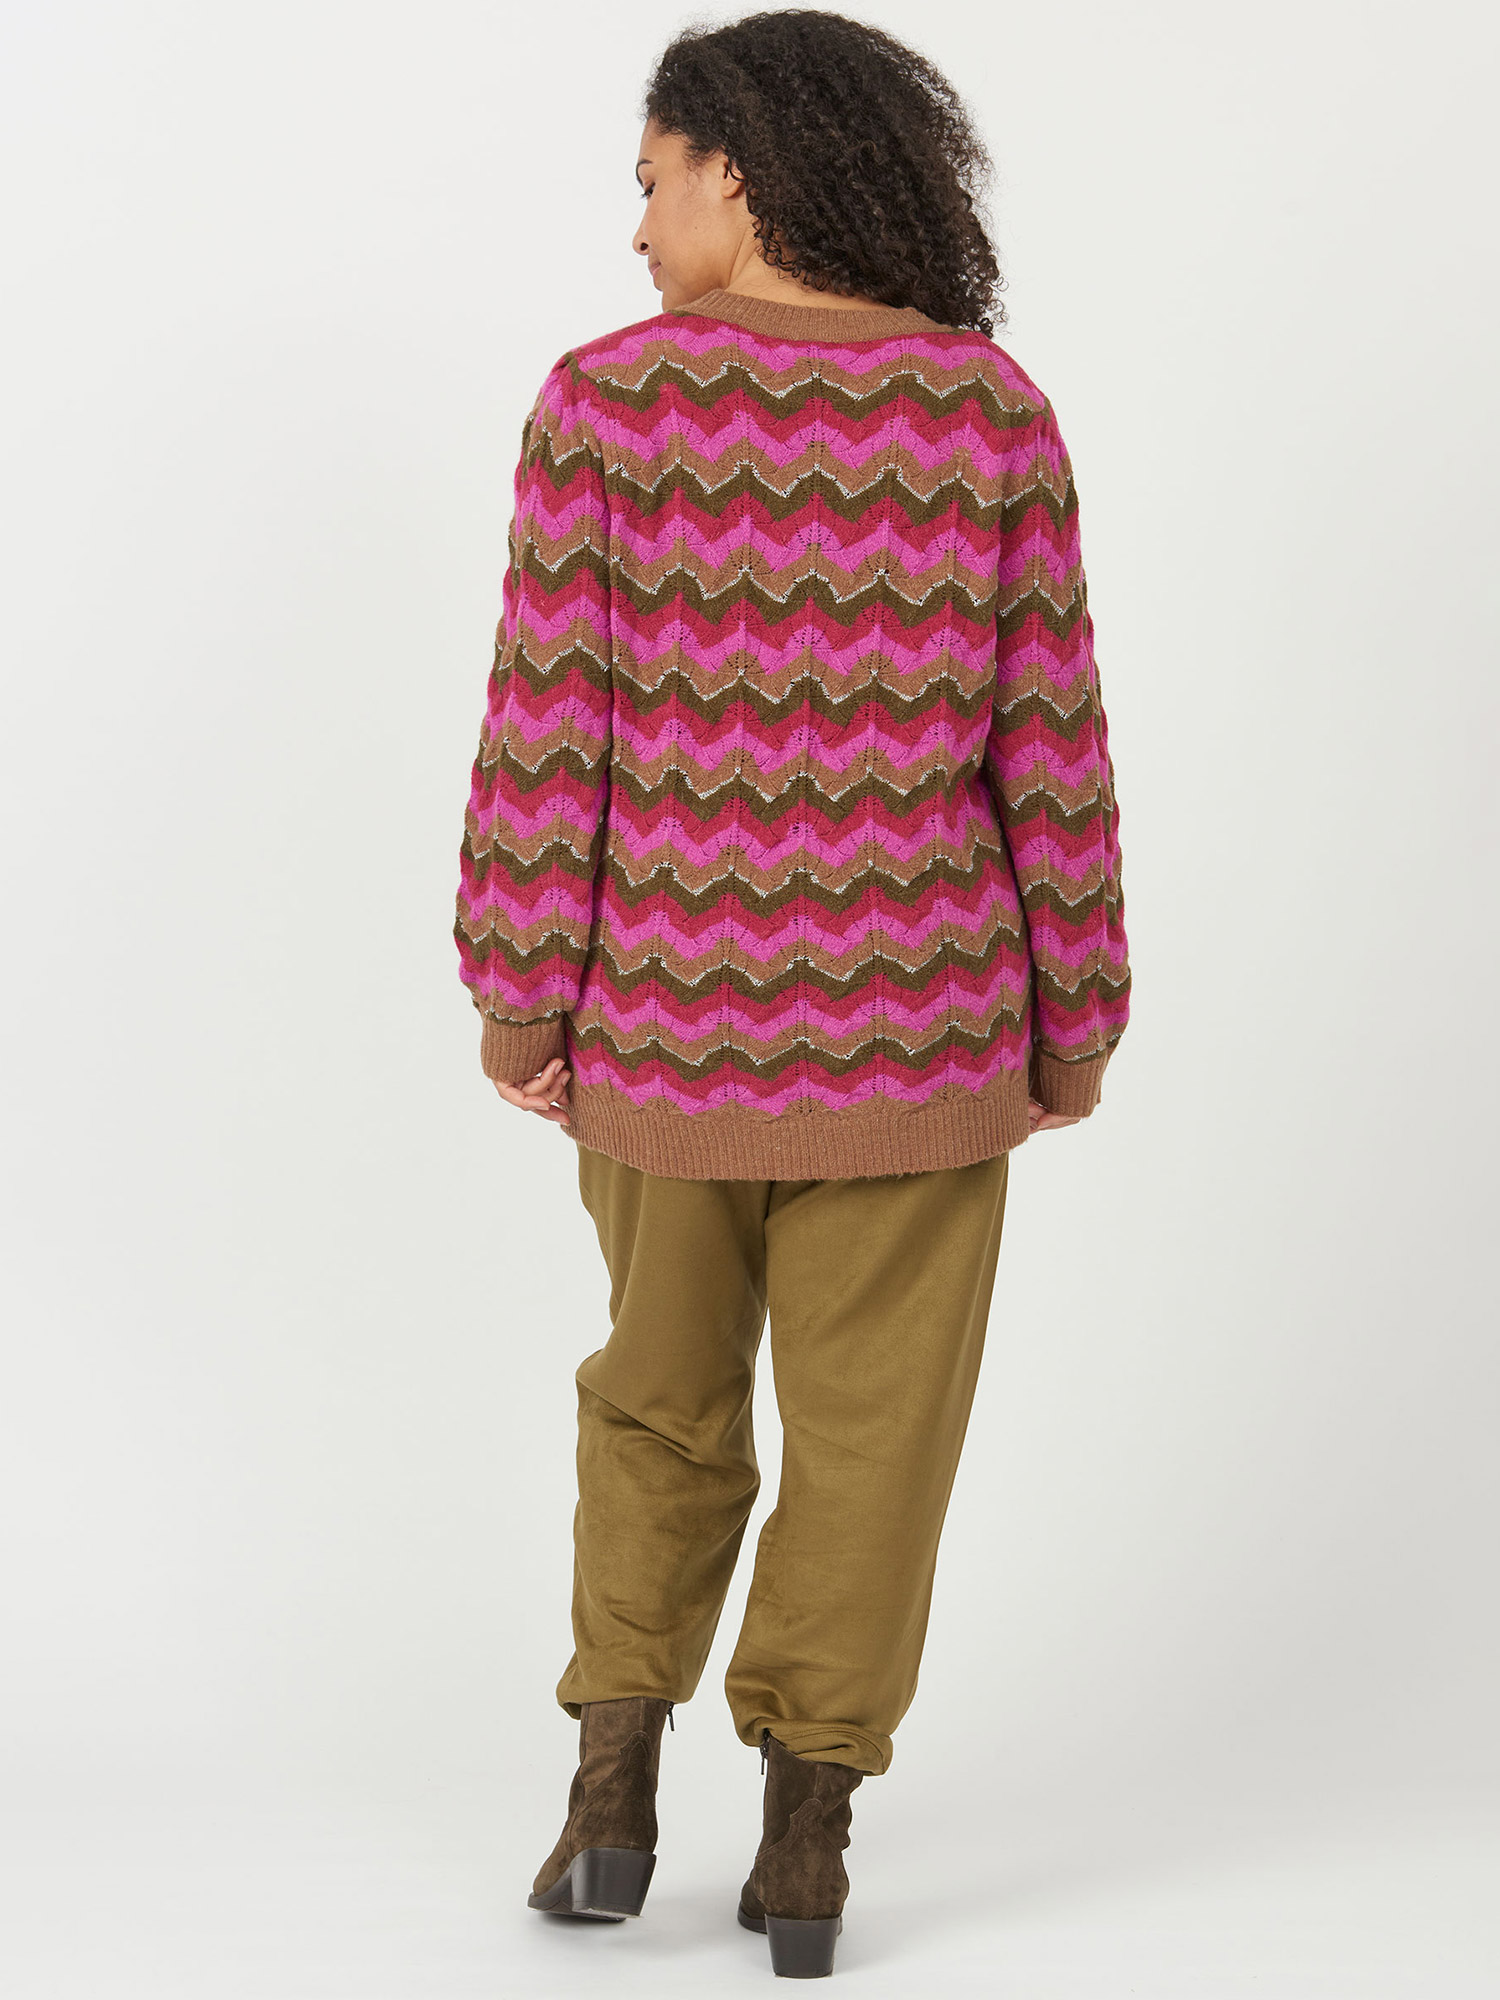 strikket genser med rosa, grønne og sølv bølger fra Adia